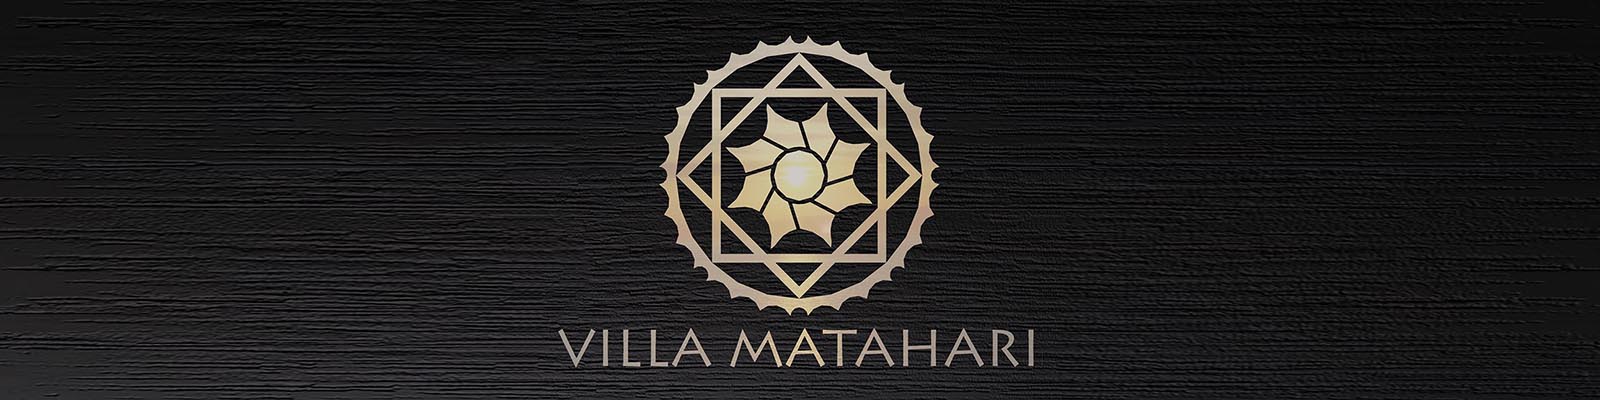 Bali | Villa Matahari | logo board